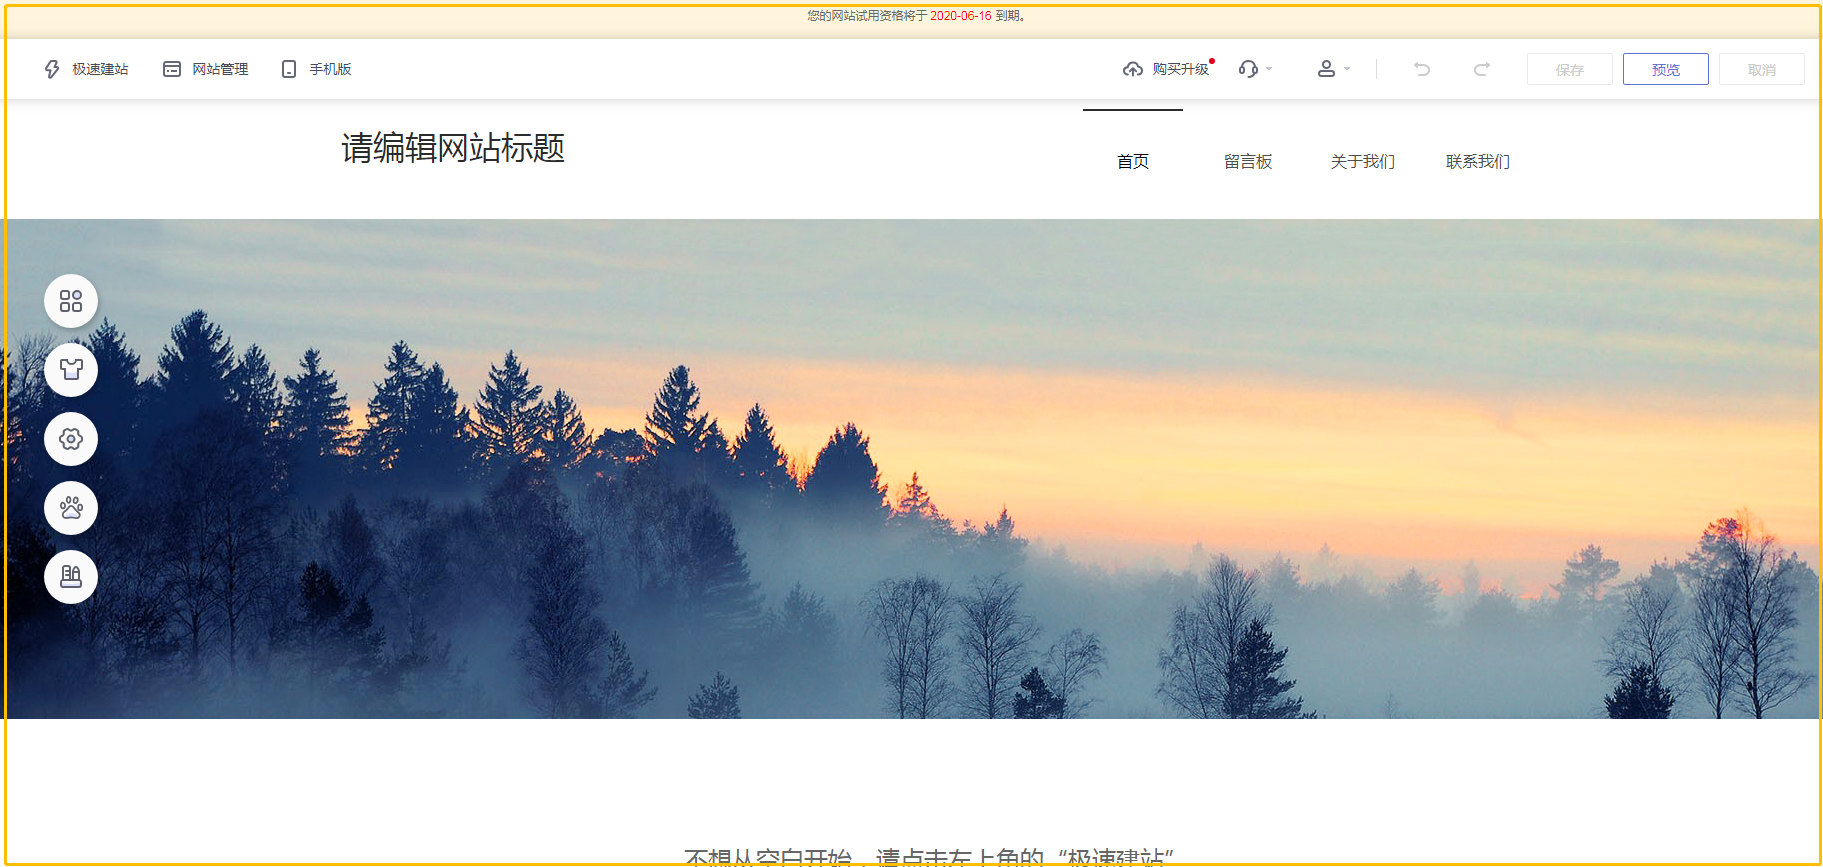 连平县的企业如何低价建立自己的网站